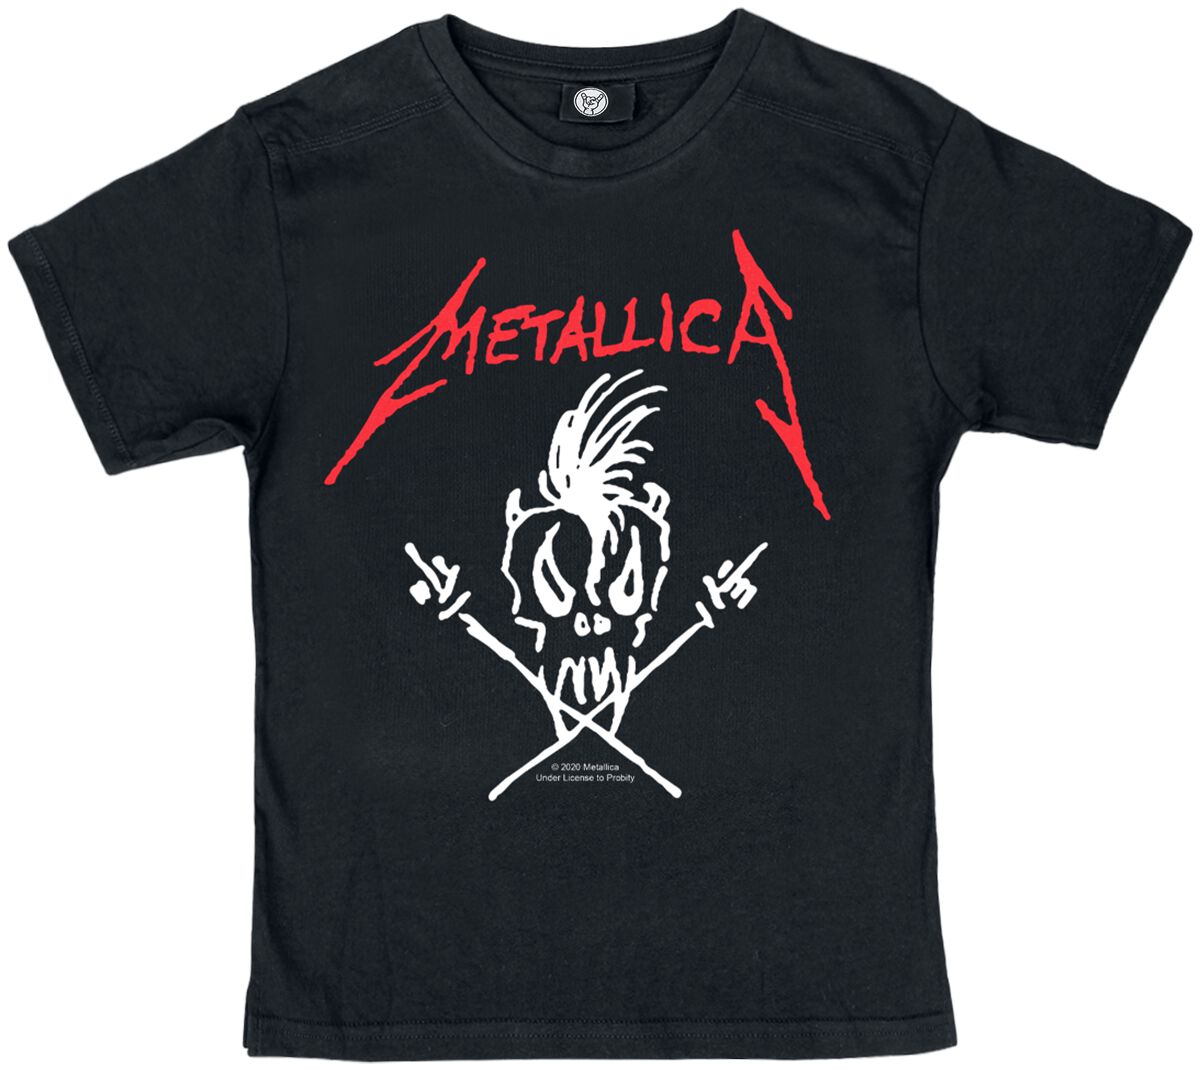 Metallica T-Shirt für Kleinkinder - Metal-Kids - Scary Guy - für Mädchen & Jungen - schwarz  - Lizenziertes Merchandise!